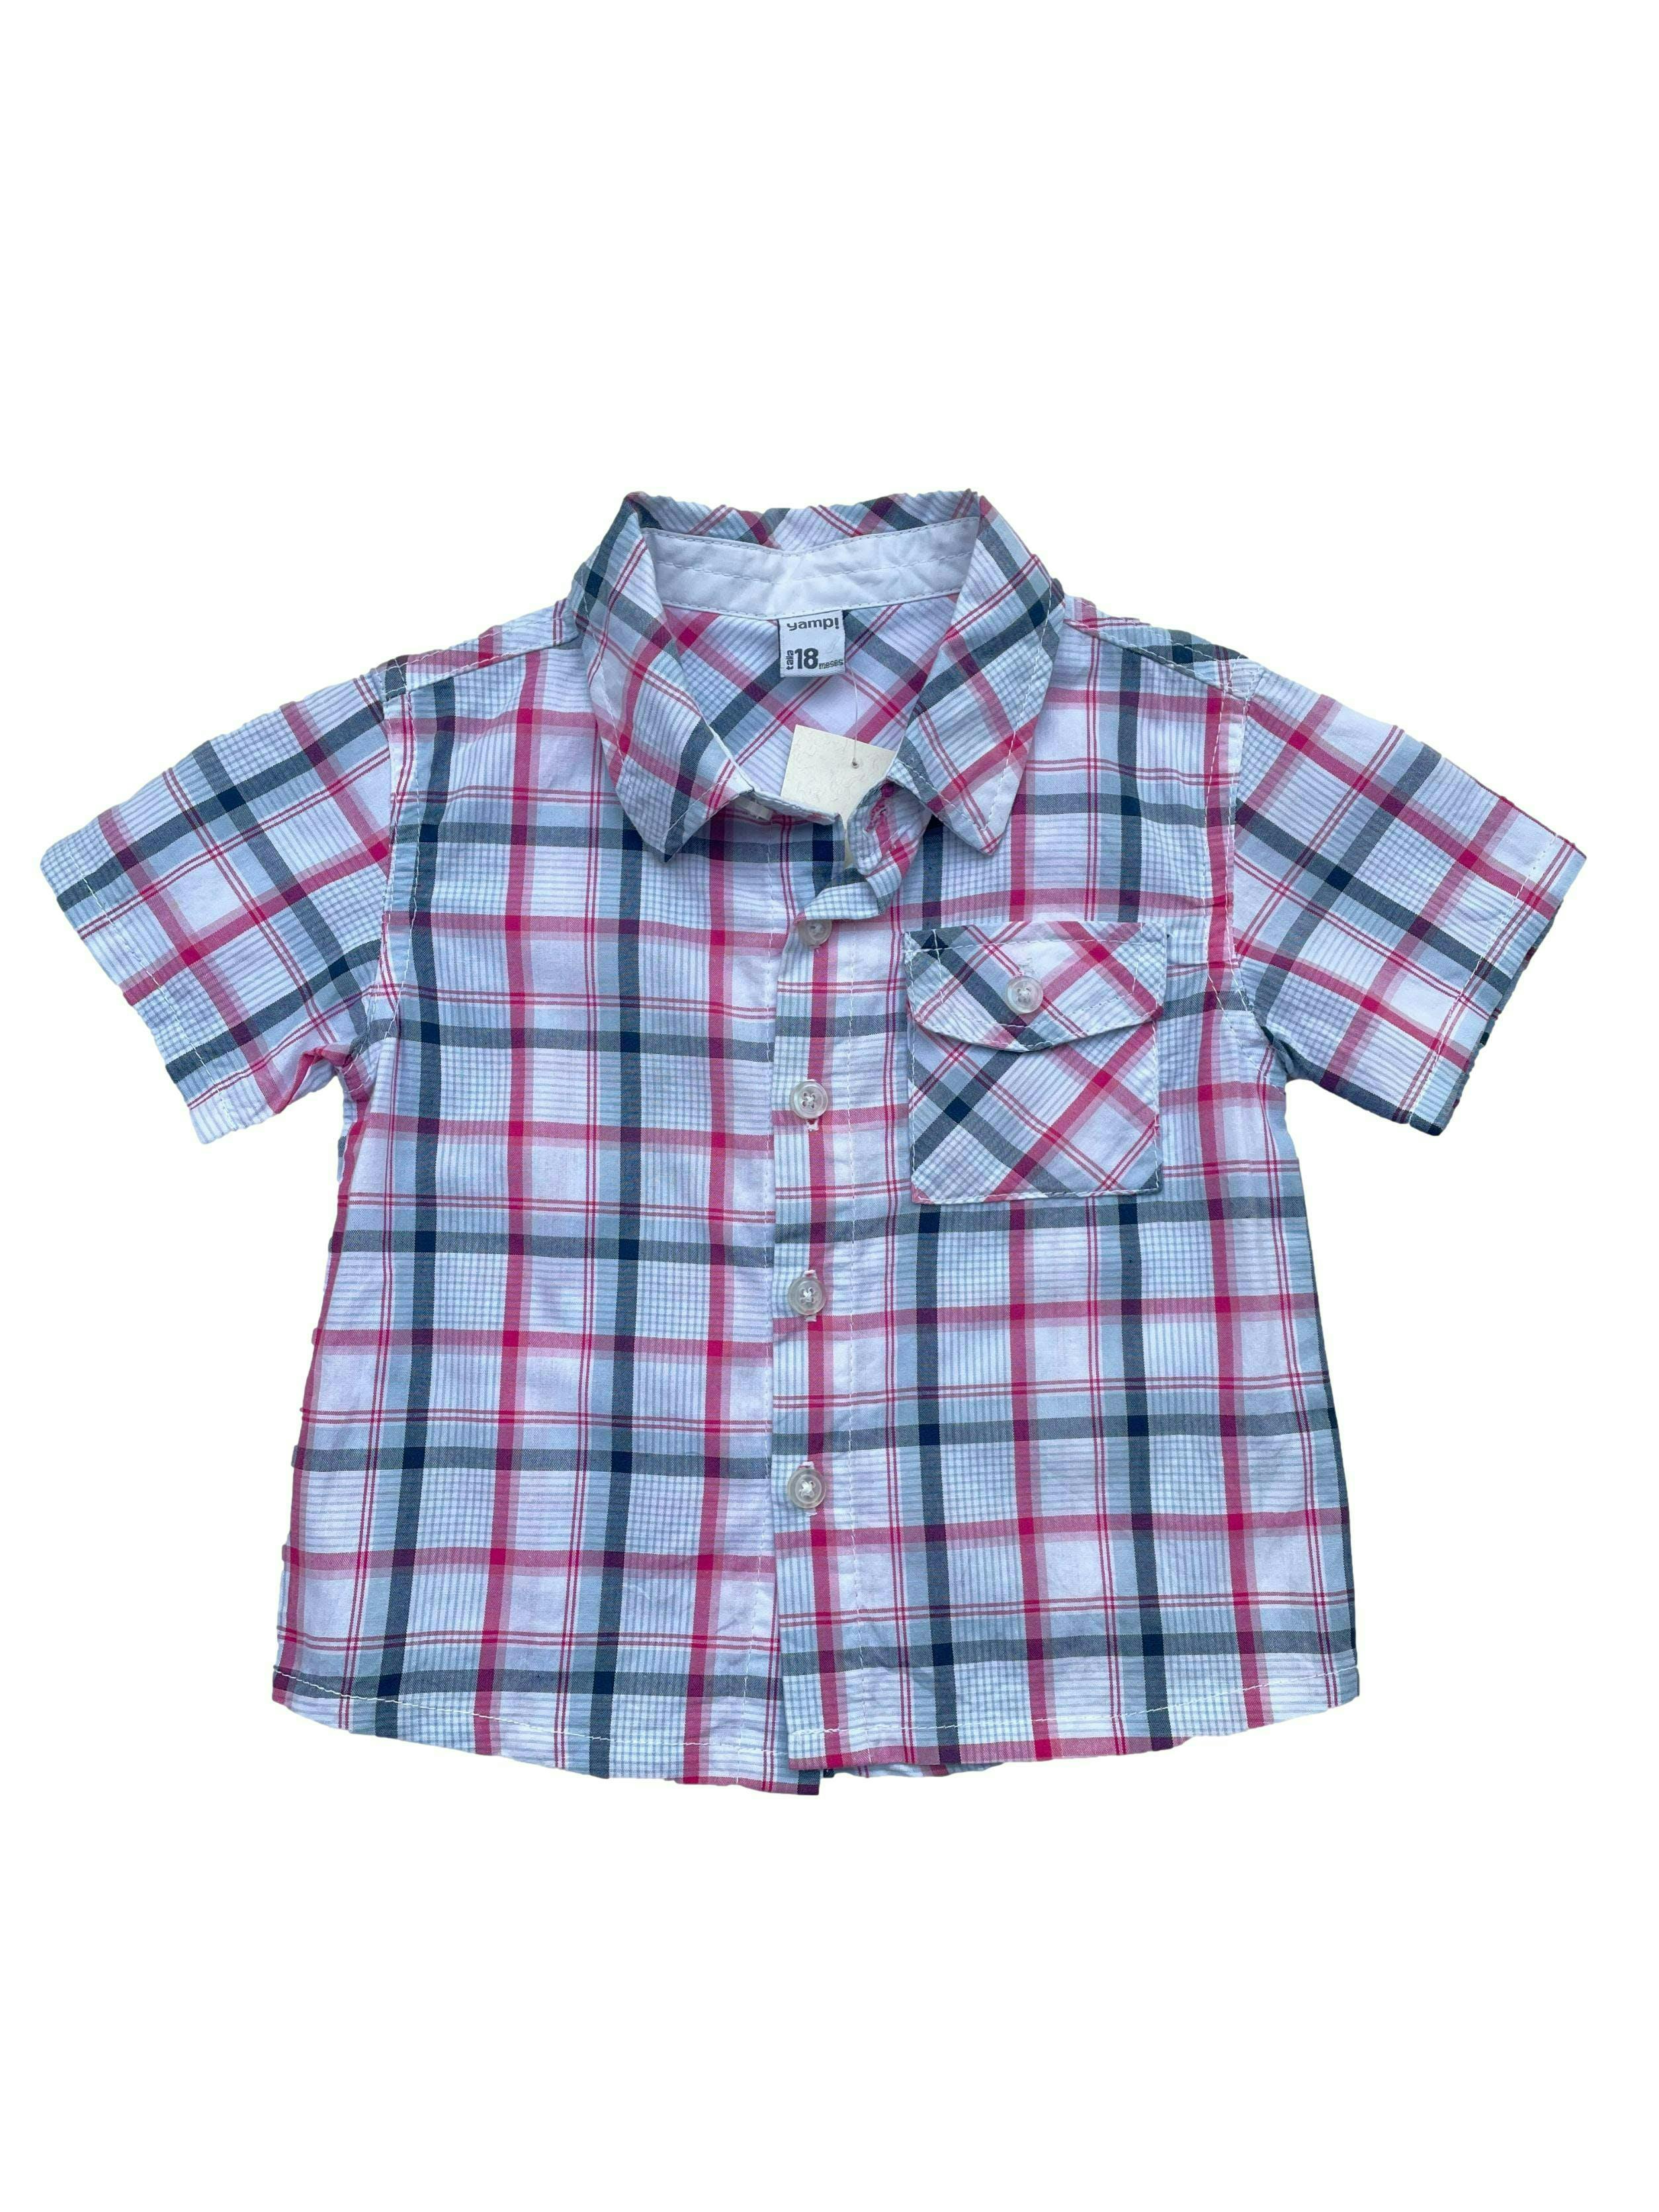 Camisa Yamp a cuadros blancos azules y rosados, 100% algodón. Pecho 62cm Largo 32cm